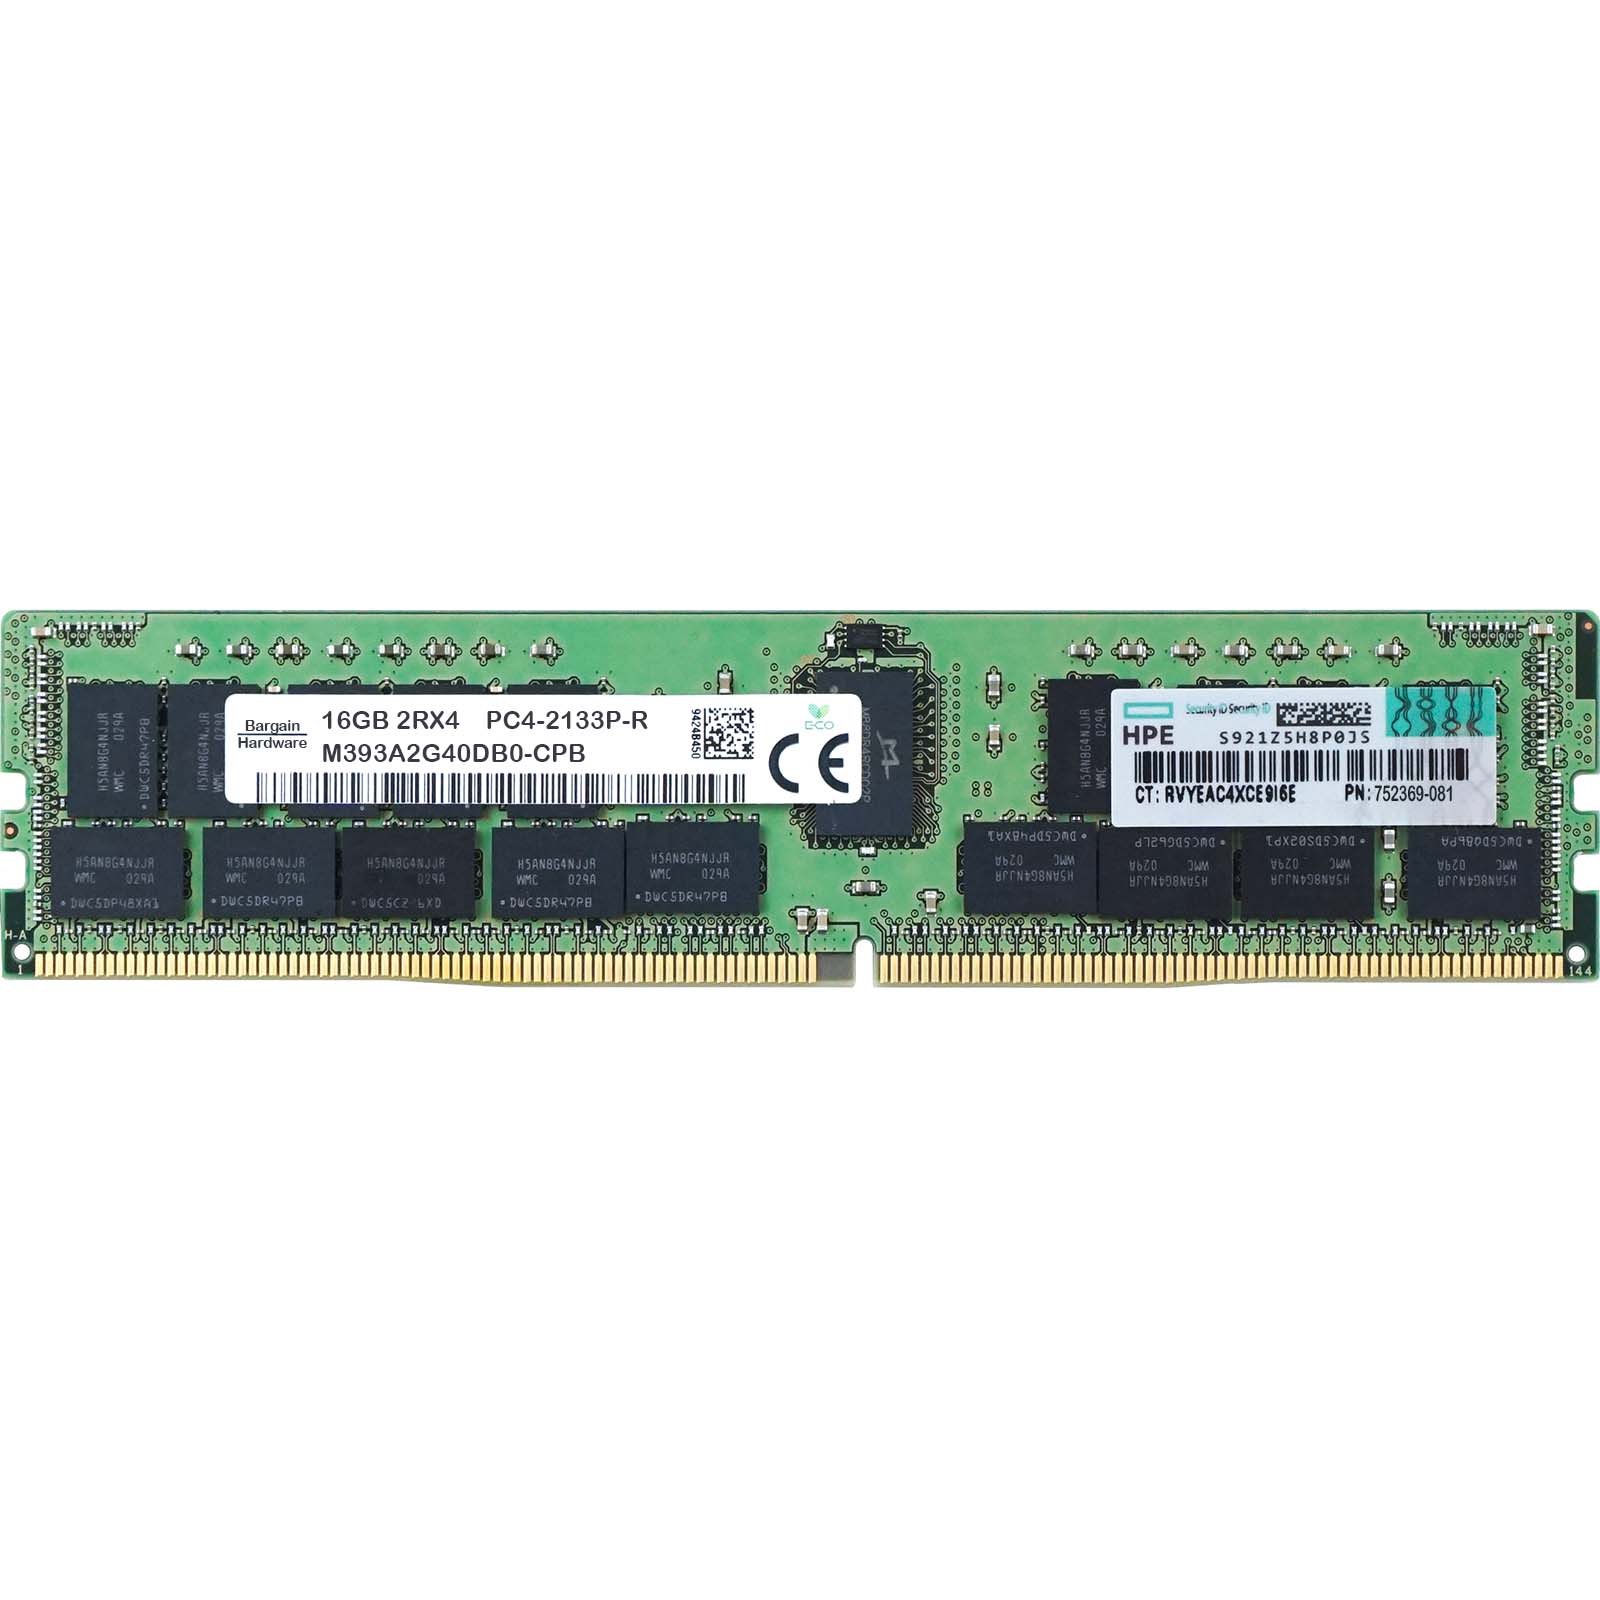 HP 752369-081 16GB PC4-PC4-17000P-R 2RX4 DDR4-2133MHz M393A2G40DB0-CPB RAM